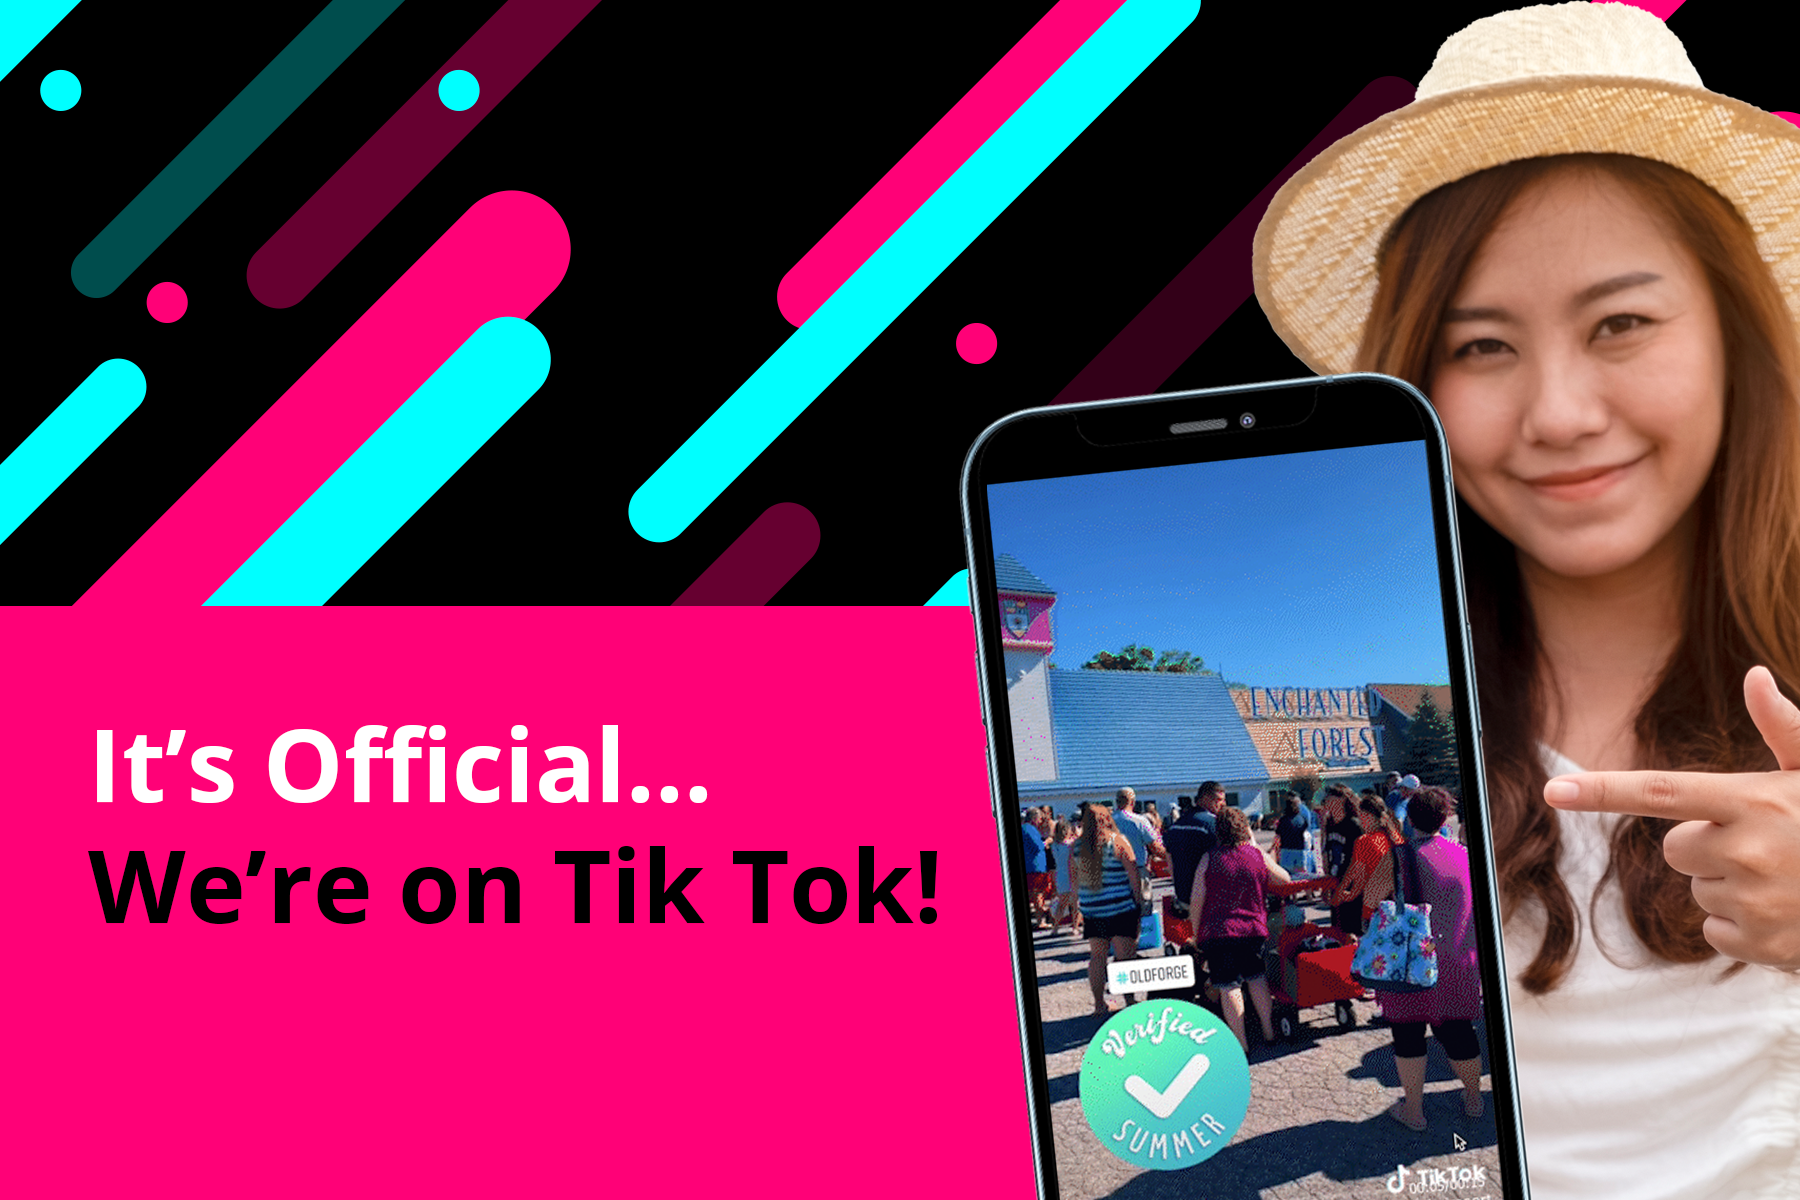 Follow us on Tik Tok!